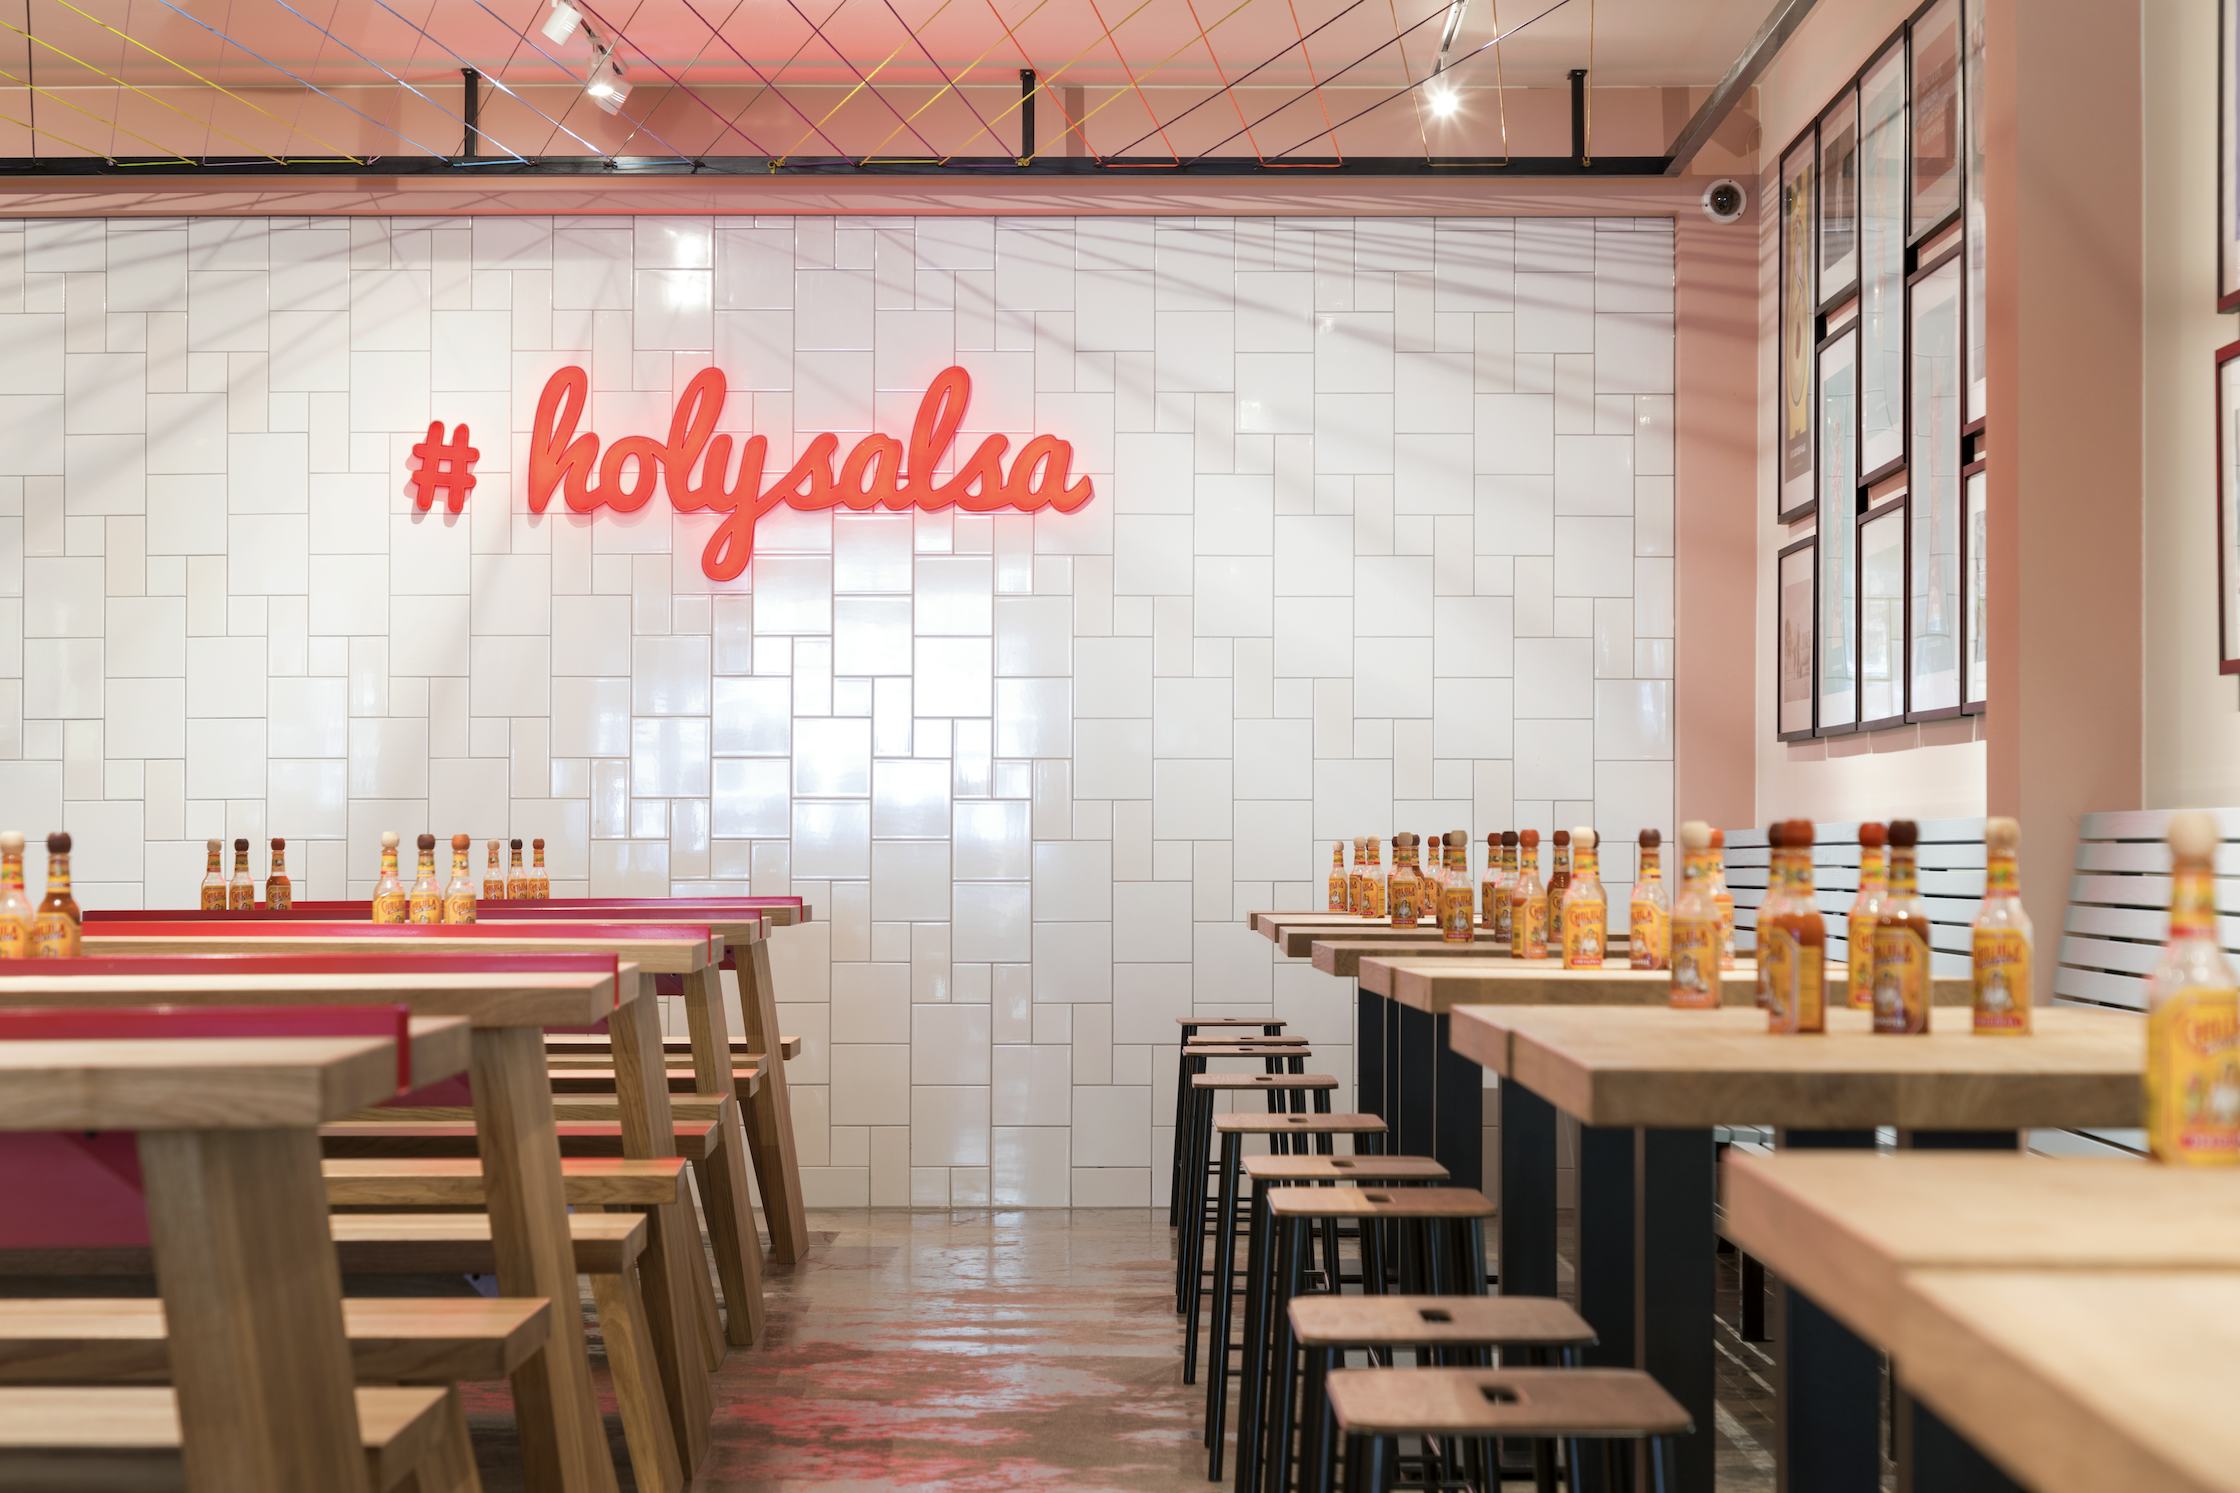 Salsa Shop wil grootste worden in vers Mexicaans eten